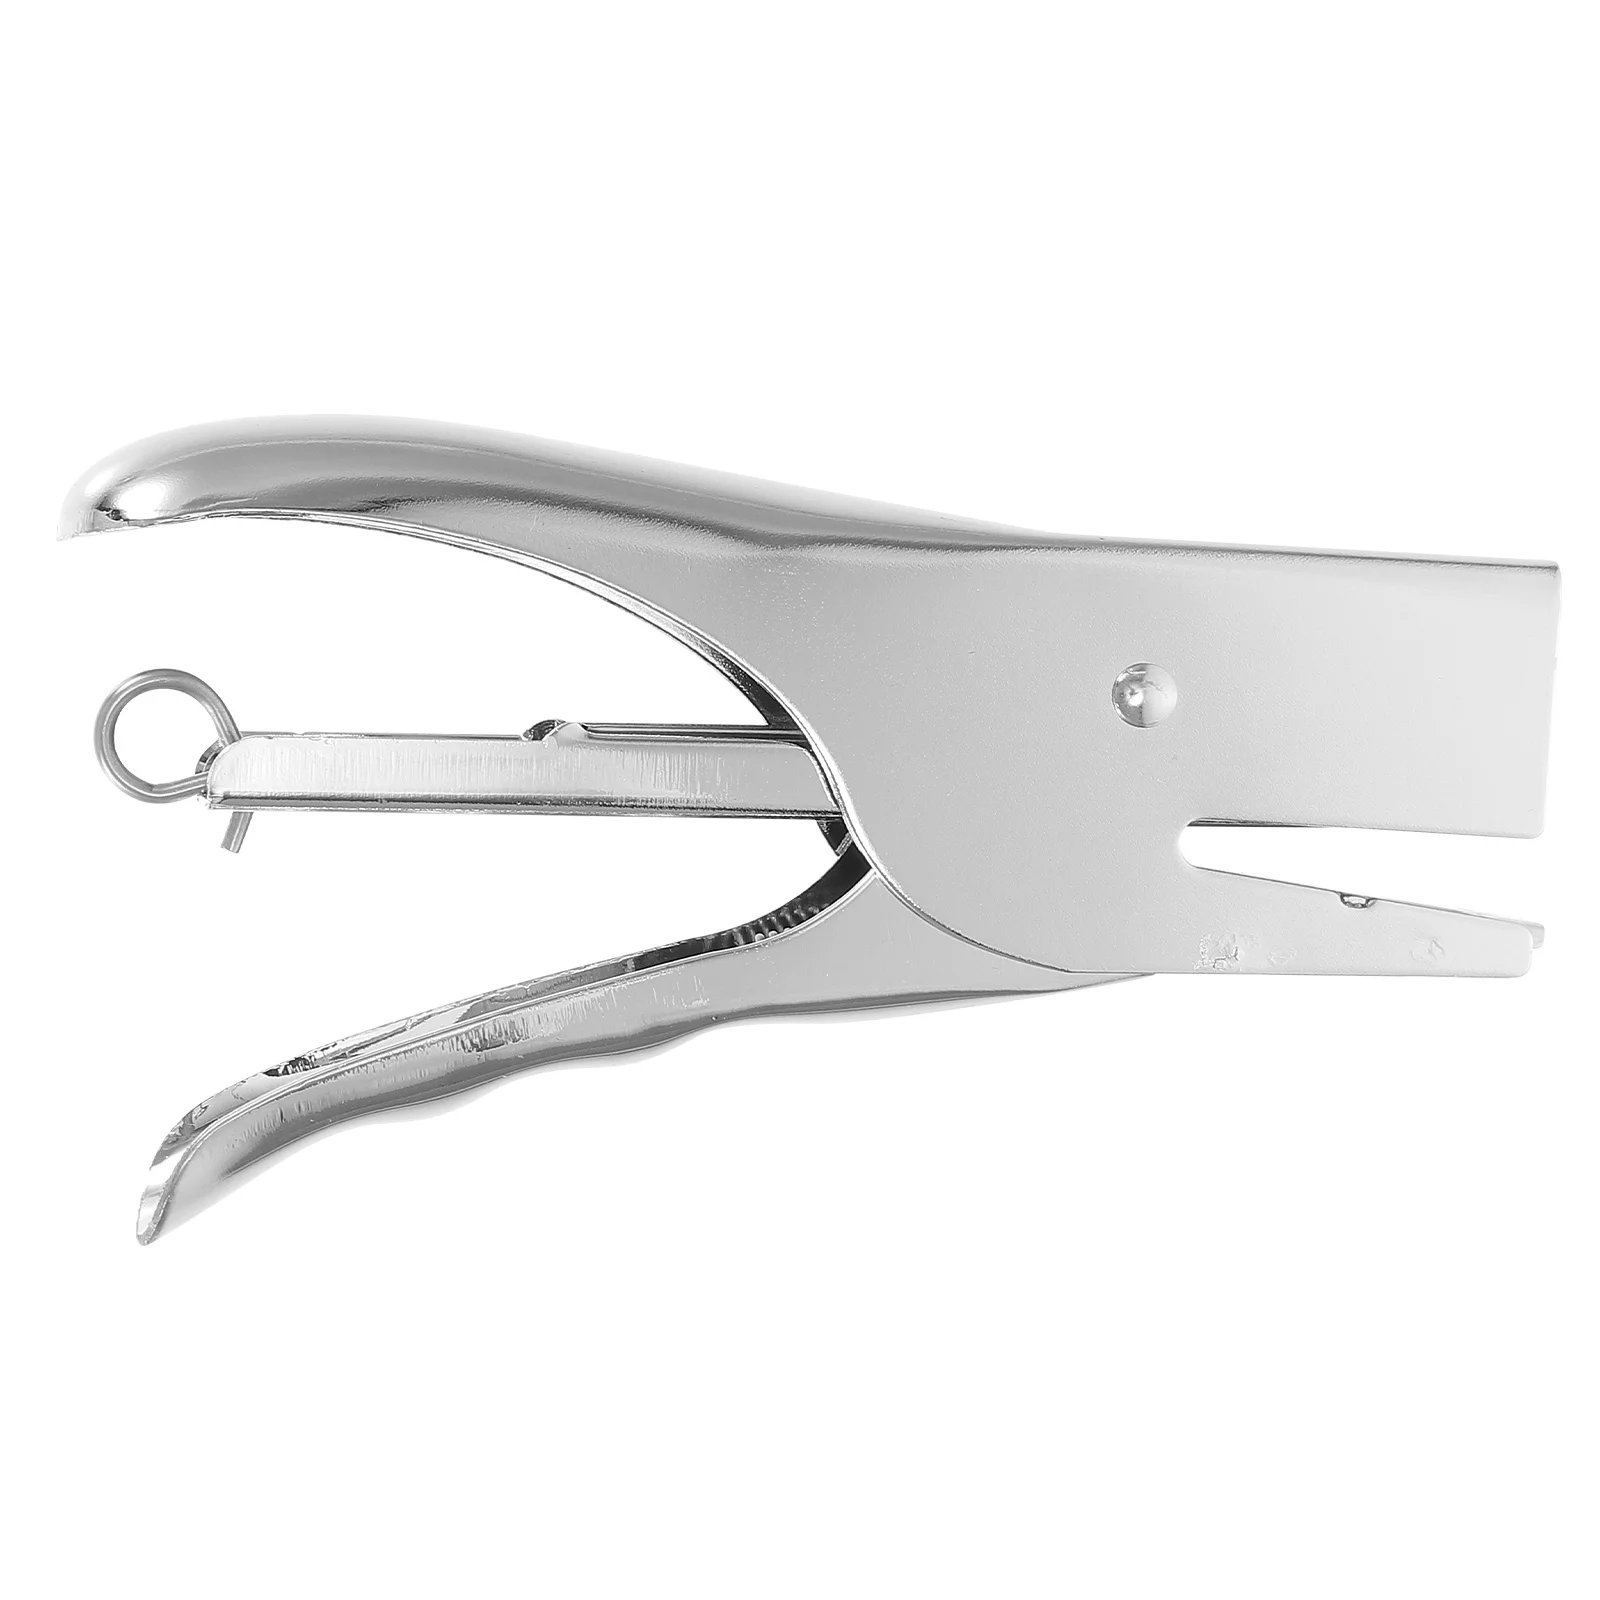 

Stapler Metal Plier Stapler Durable Heavy Duty Hand Grip Standard Staples Plier Stapler for School Company Office